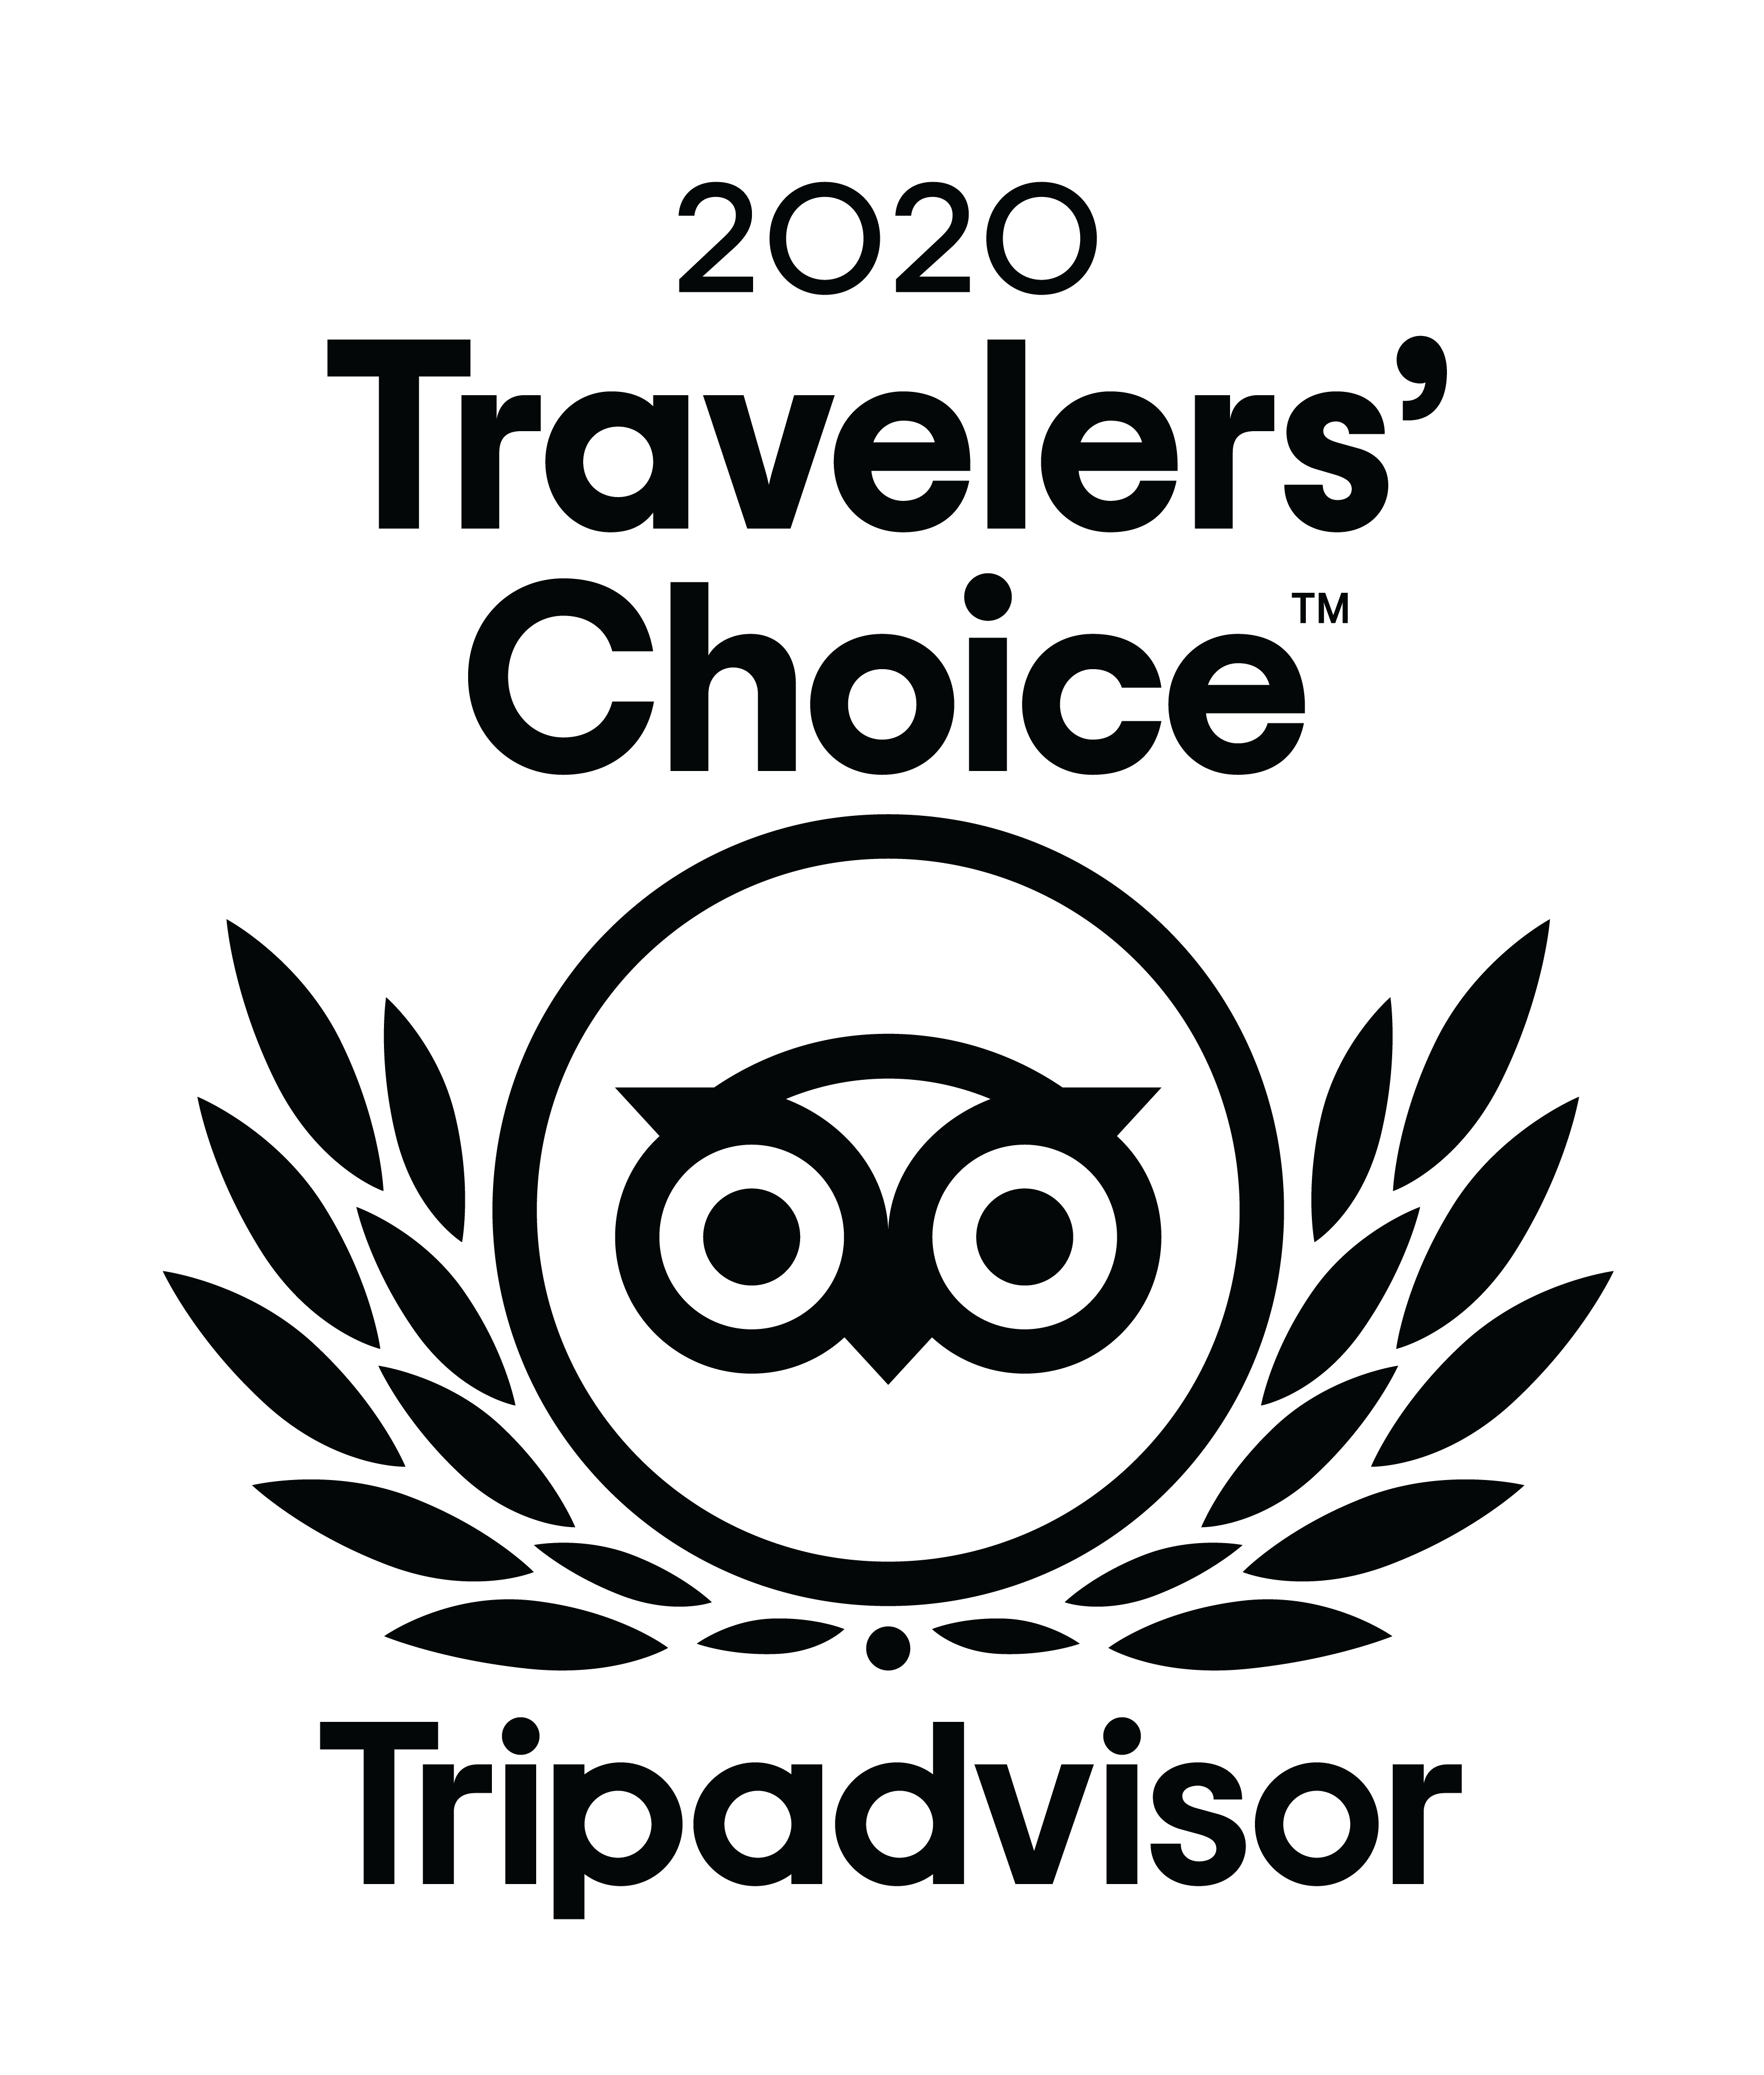 2020 travelers Choice award badge - Tripadvisor